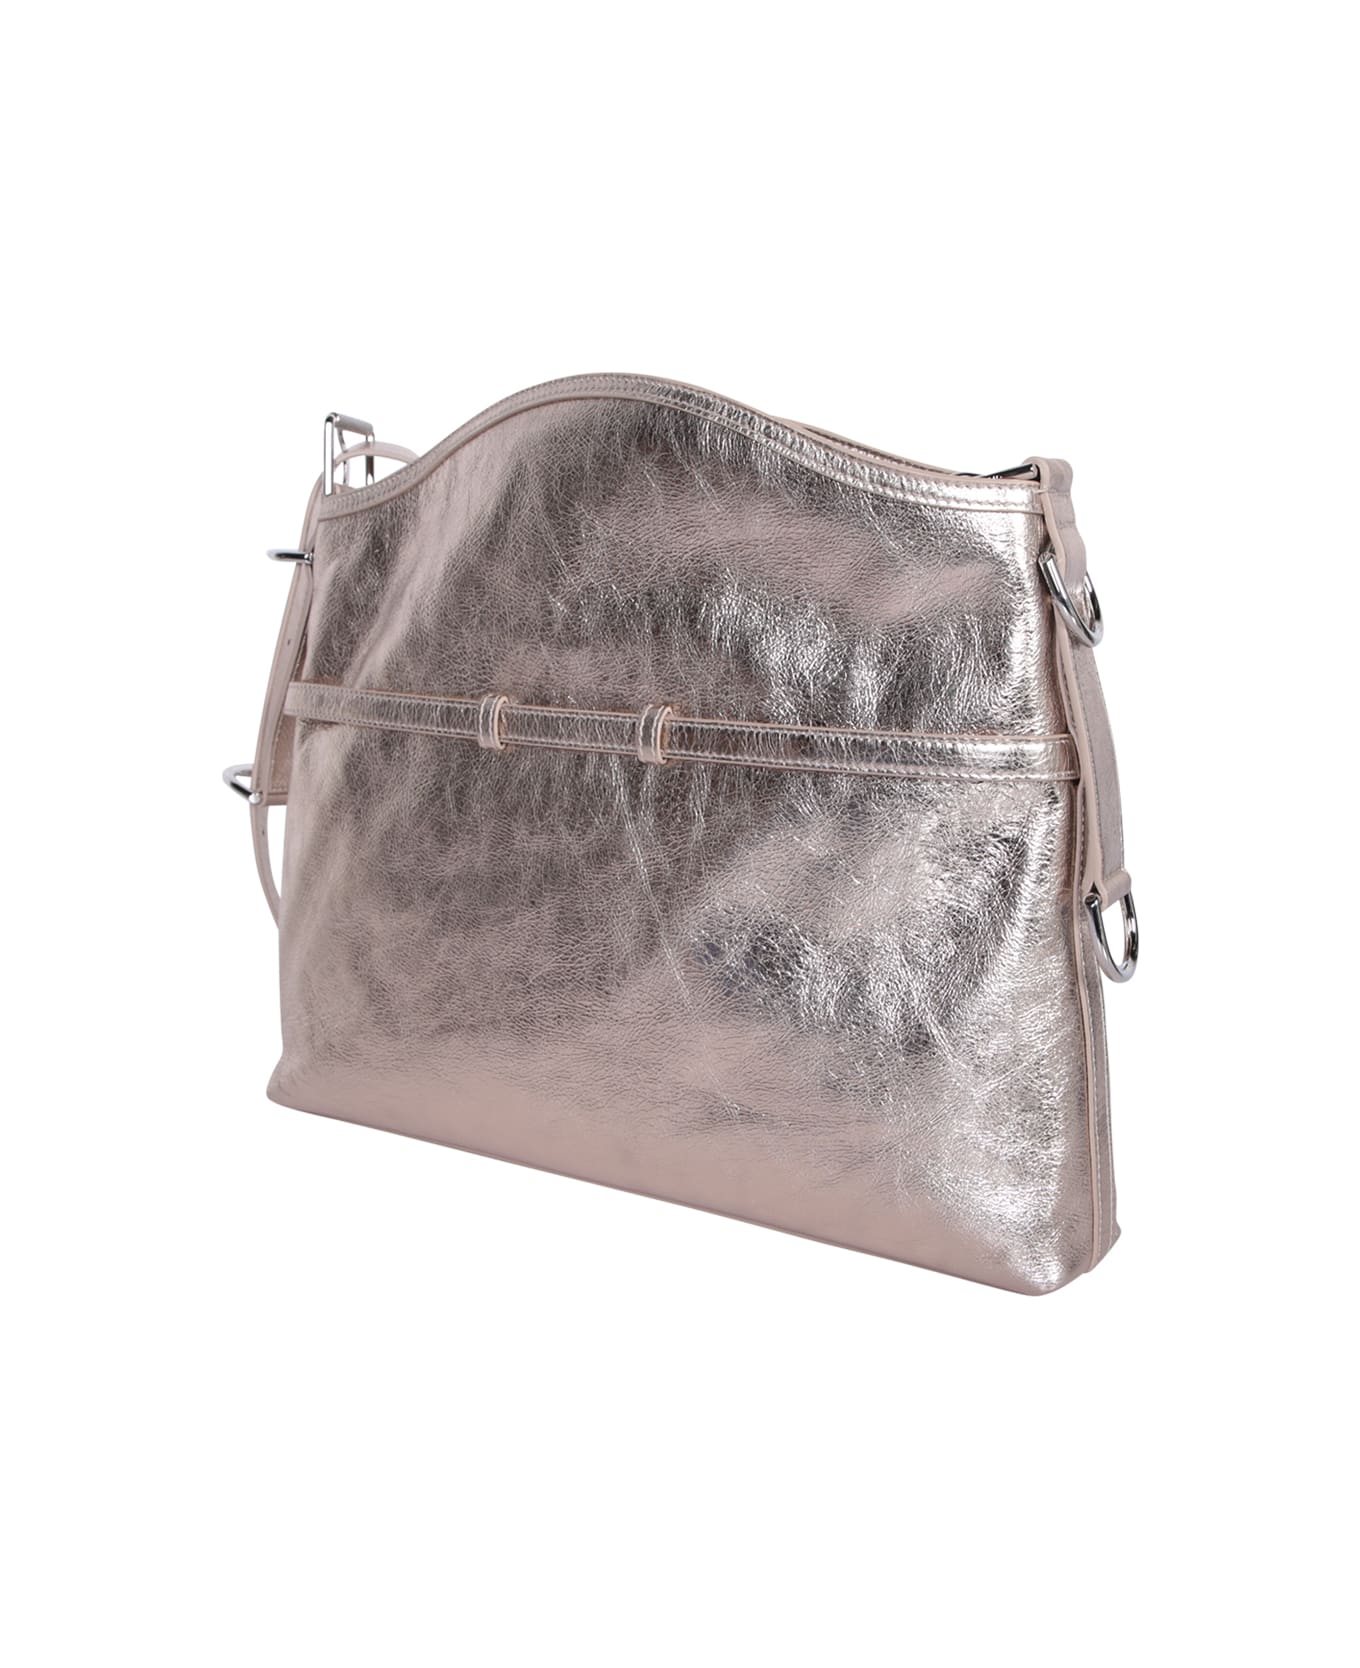 Givenchy Voyou Medium Bag - Metallic